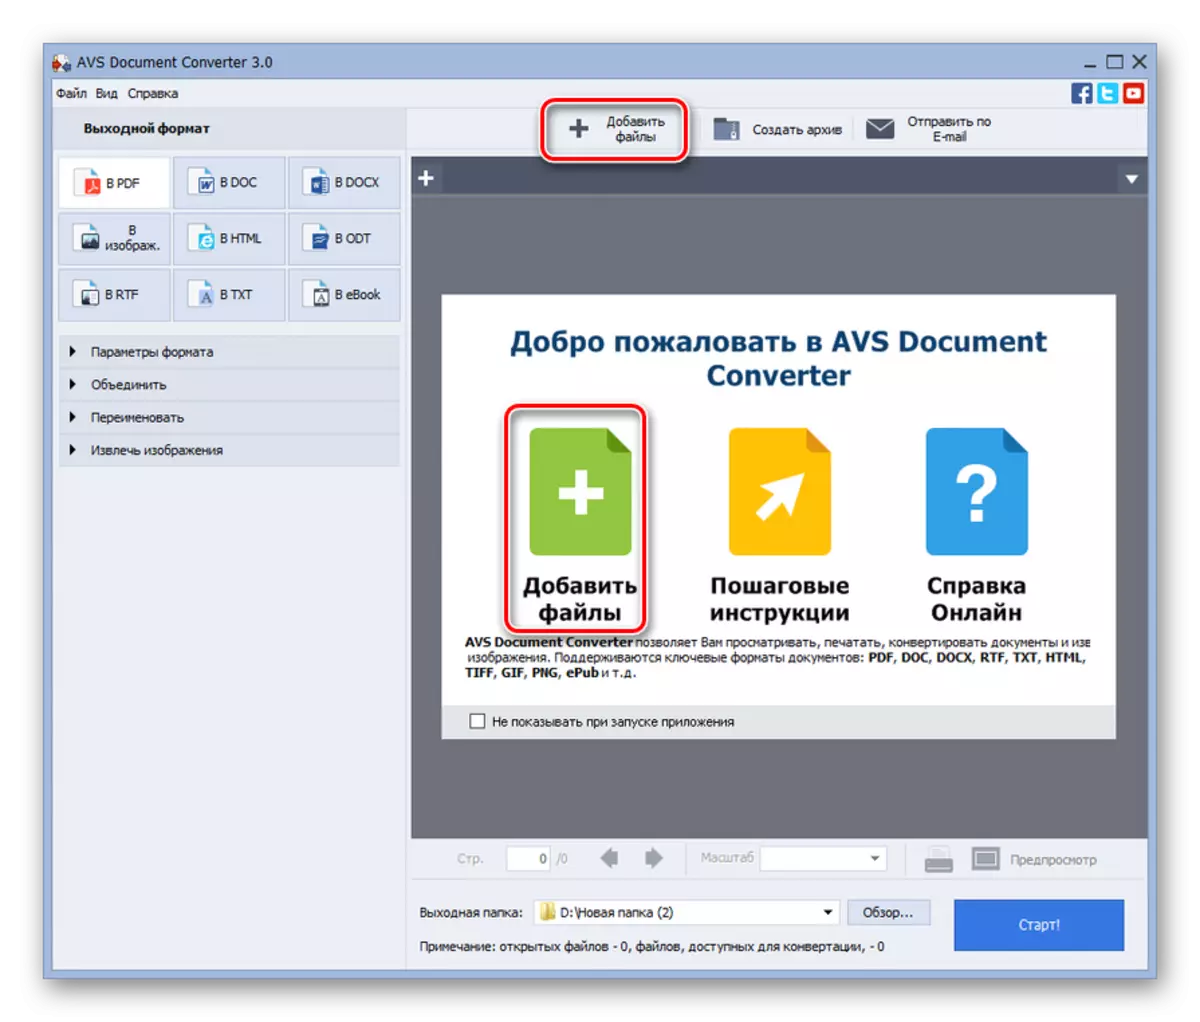 Pumunta sa window ng Add File sa programa ng converter ng AVS Document